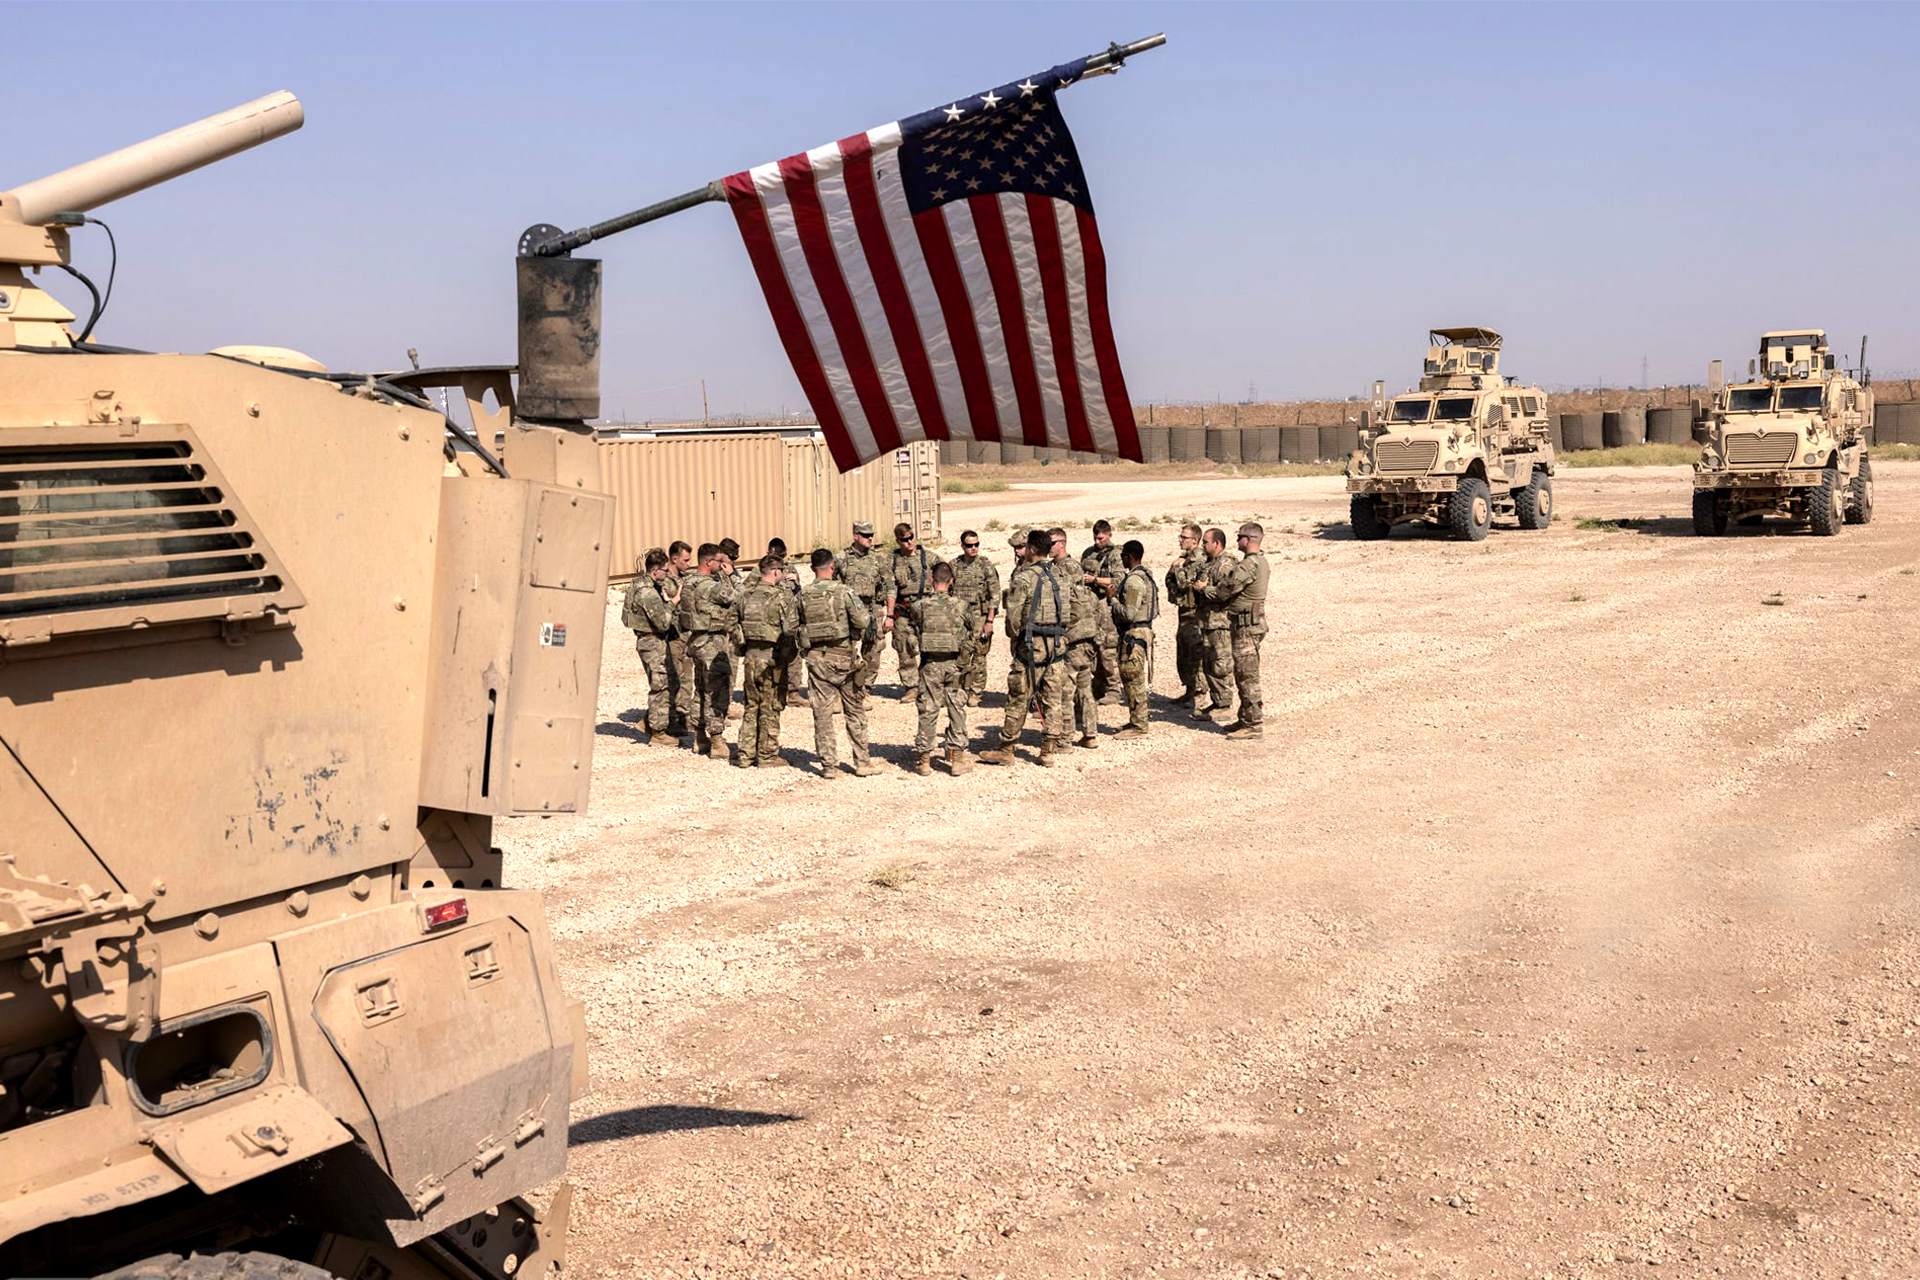 كيف سترد واشنطن على هجوم القاعدة الأميركية بالأردن؟ | سياسة – البوكس نيوز